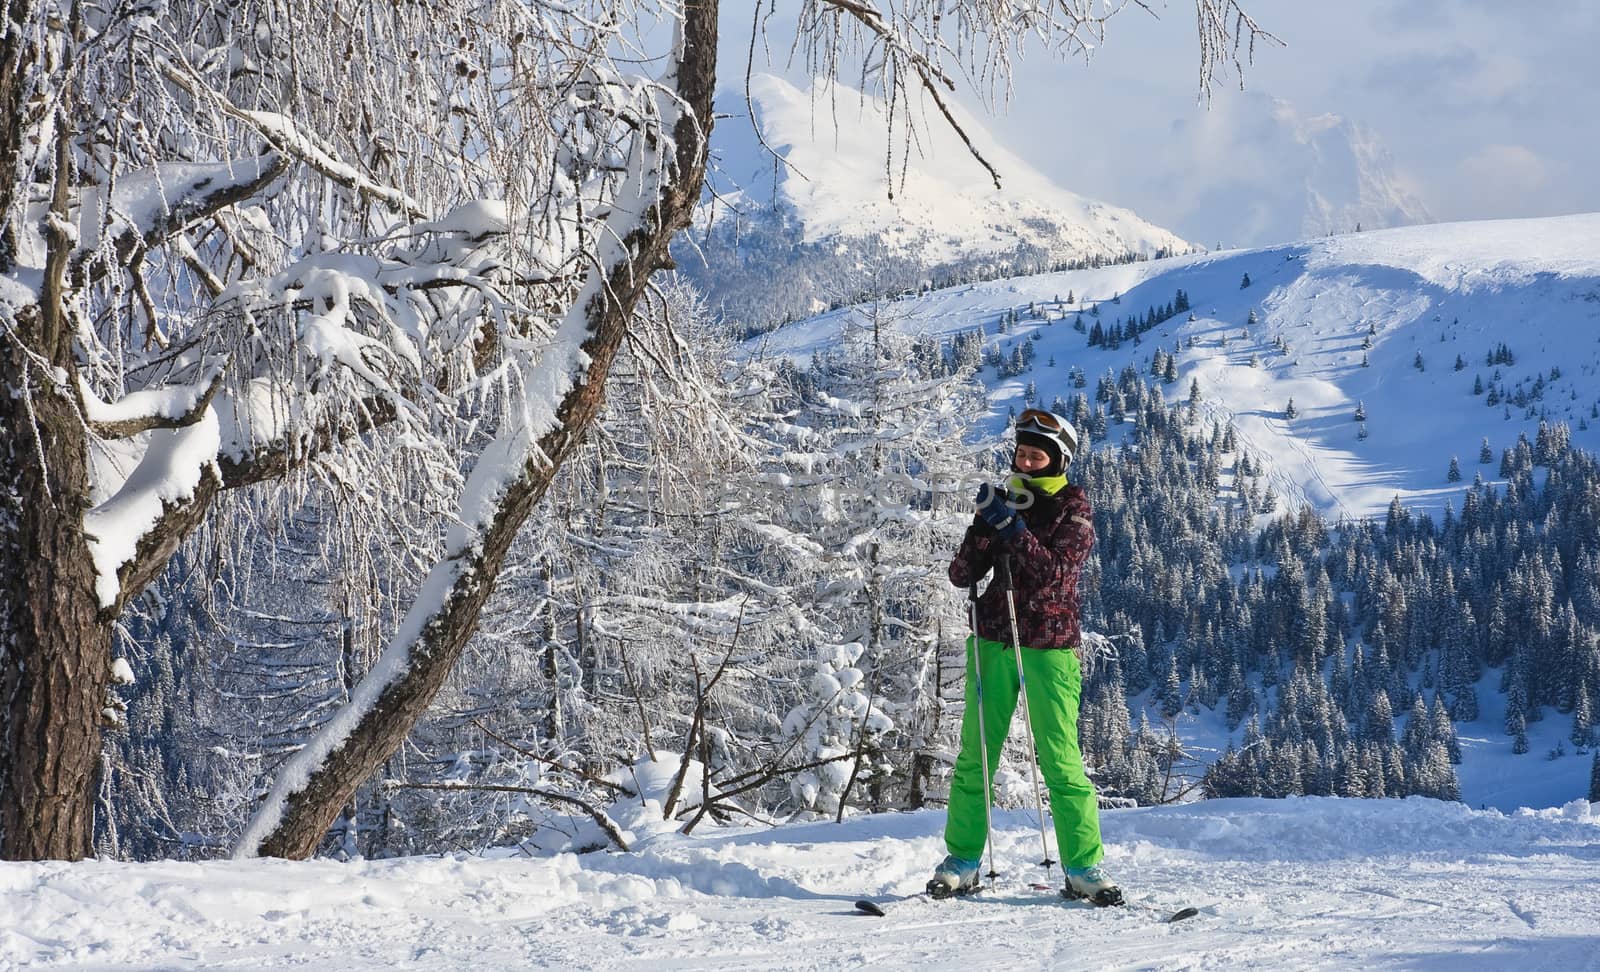 Alpine skier. Ski resort of Selva di Val Gardena, Italy by nikolpetr